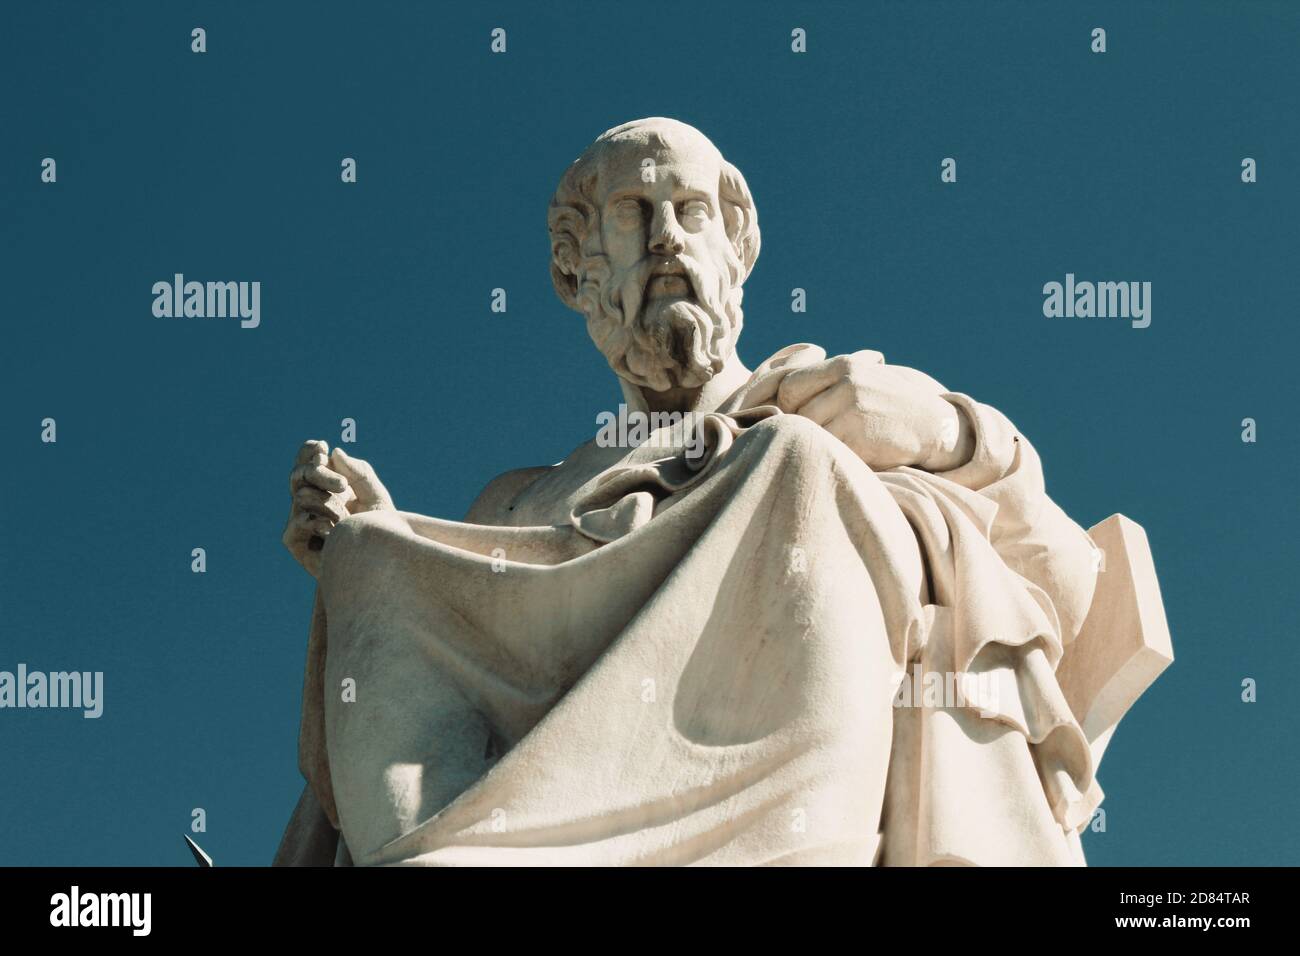 Estatua del antiguo filósofo griego Platón en Atenas, Grecia. Foto de stock